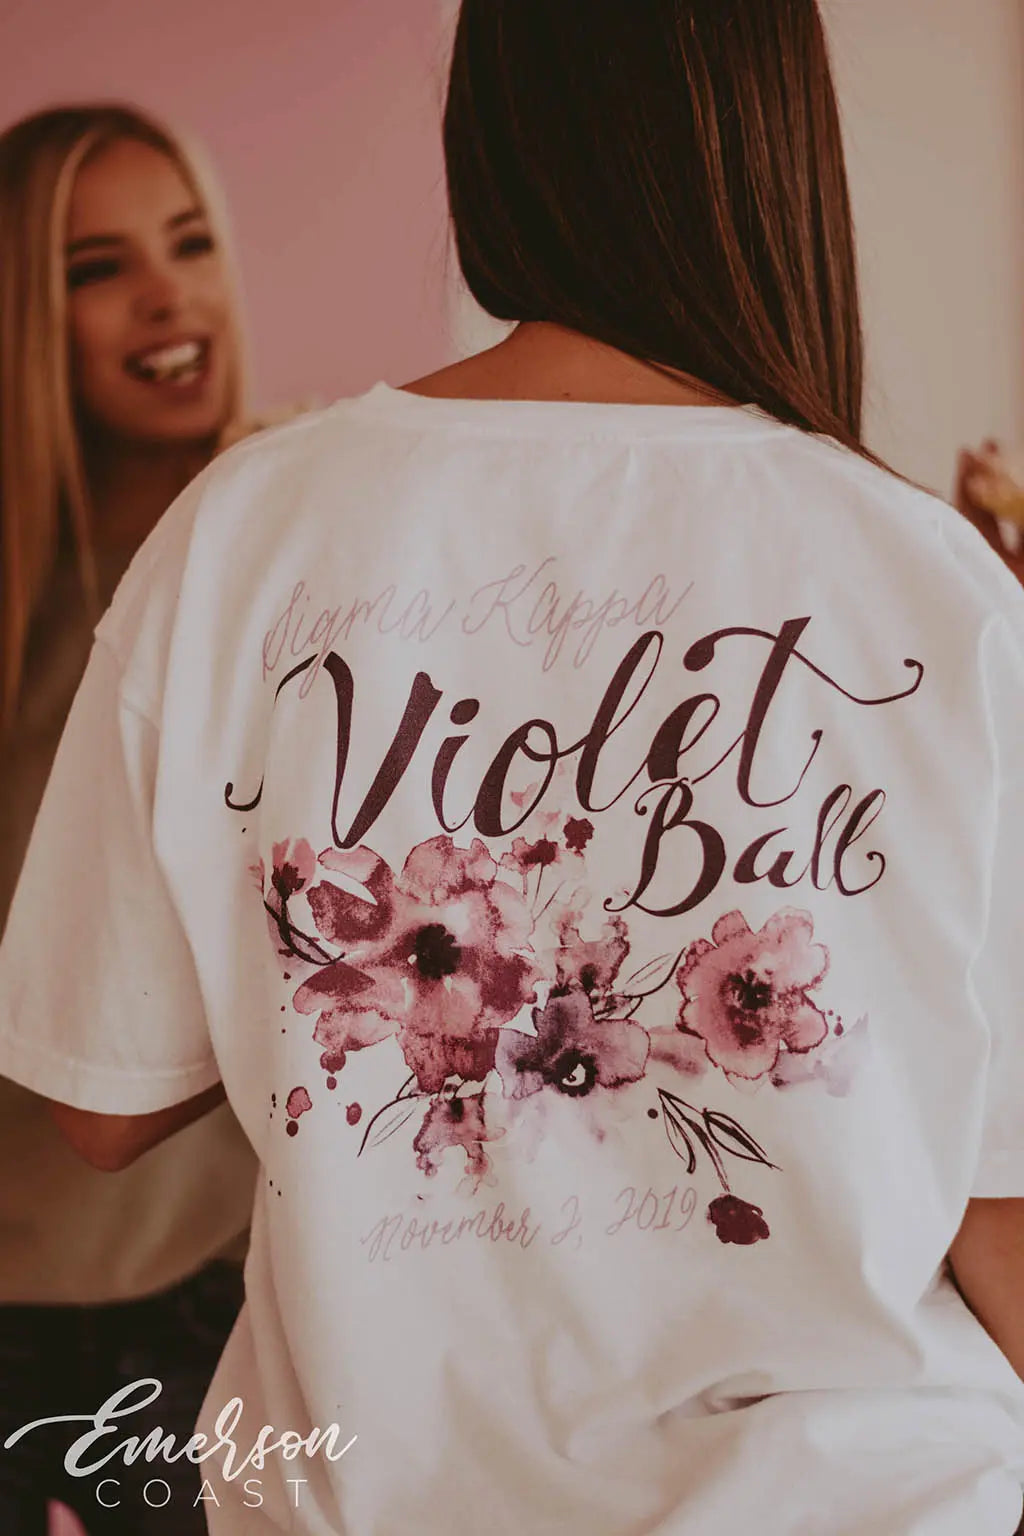 Sigma Kappa Violet Ball Formal Tee